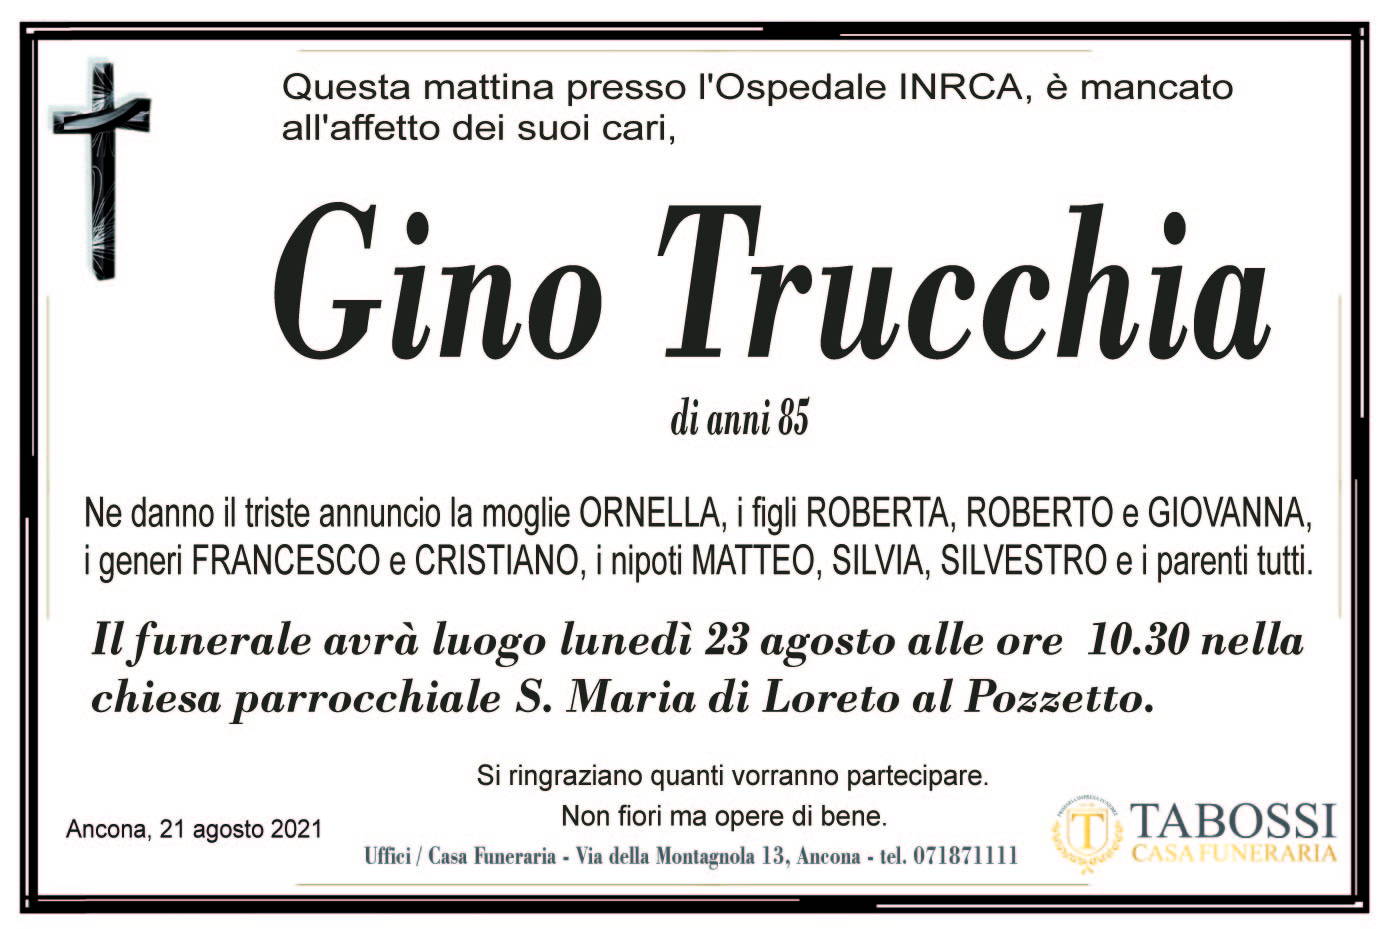 Gino Trucchia